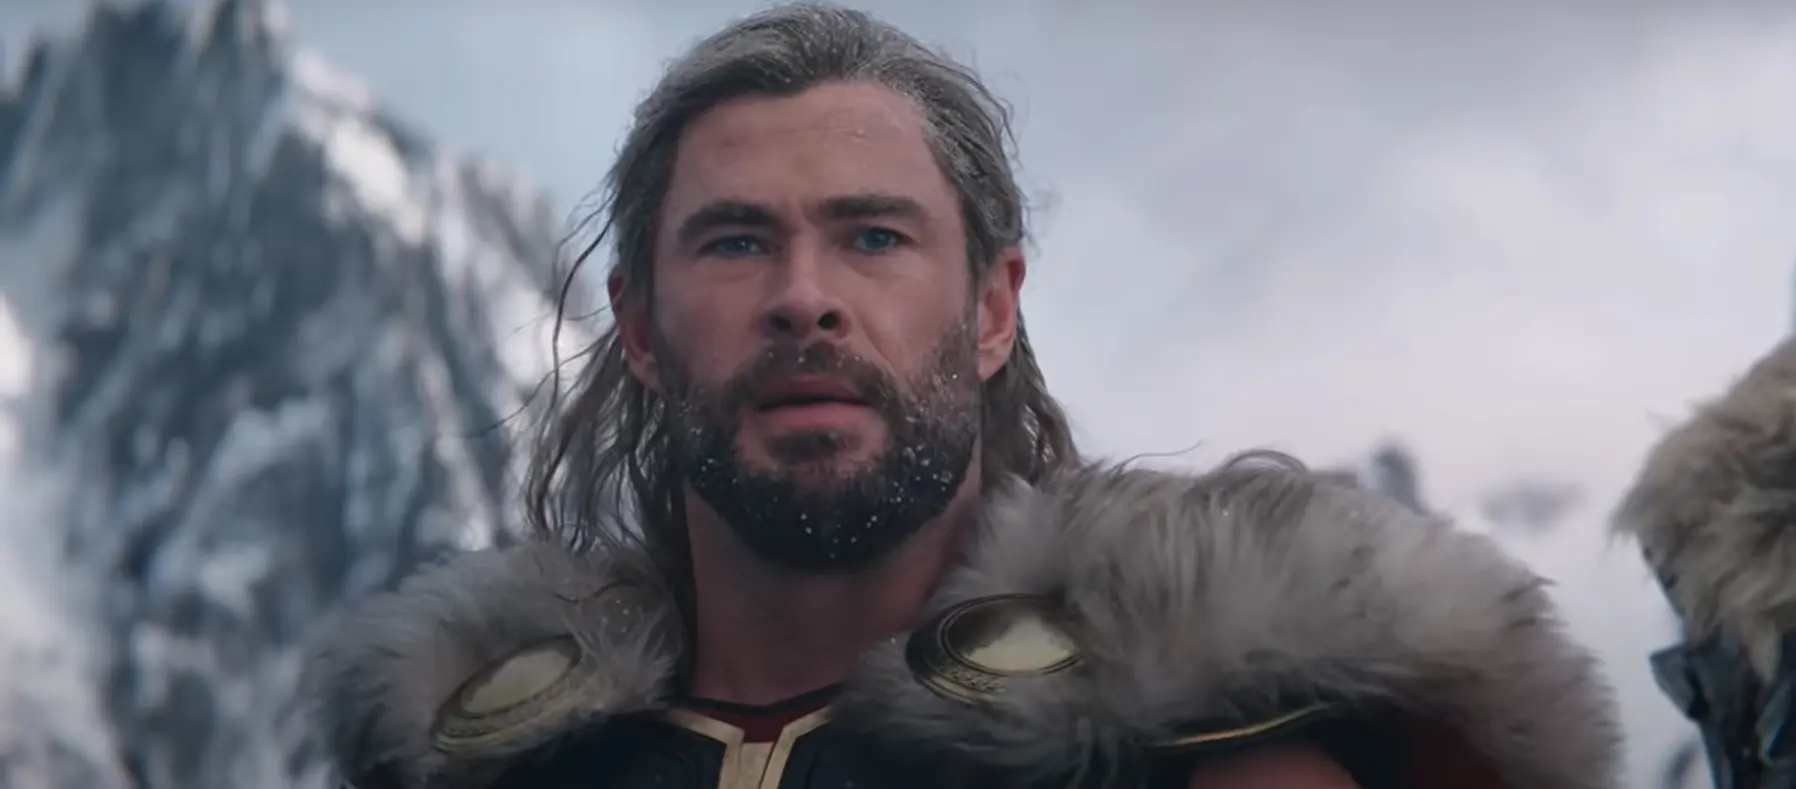 Trailer: Thor vyrýsoval svaly, kladivo pozvedne i jeho milá